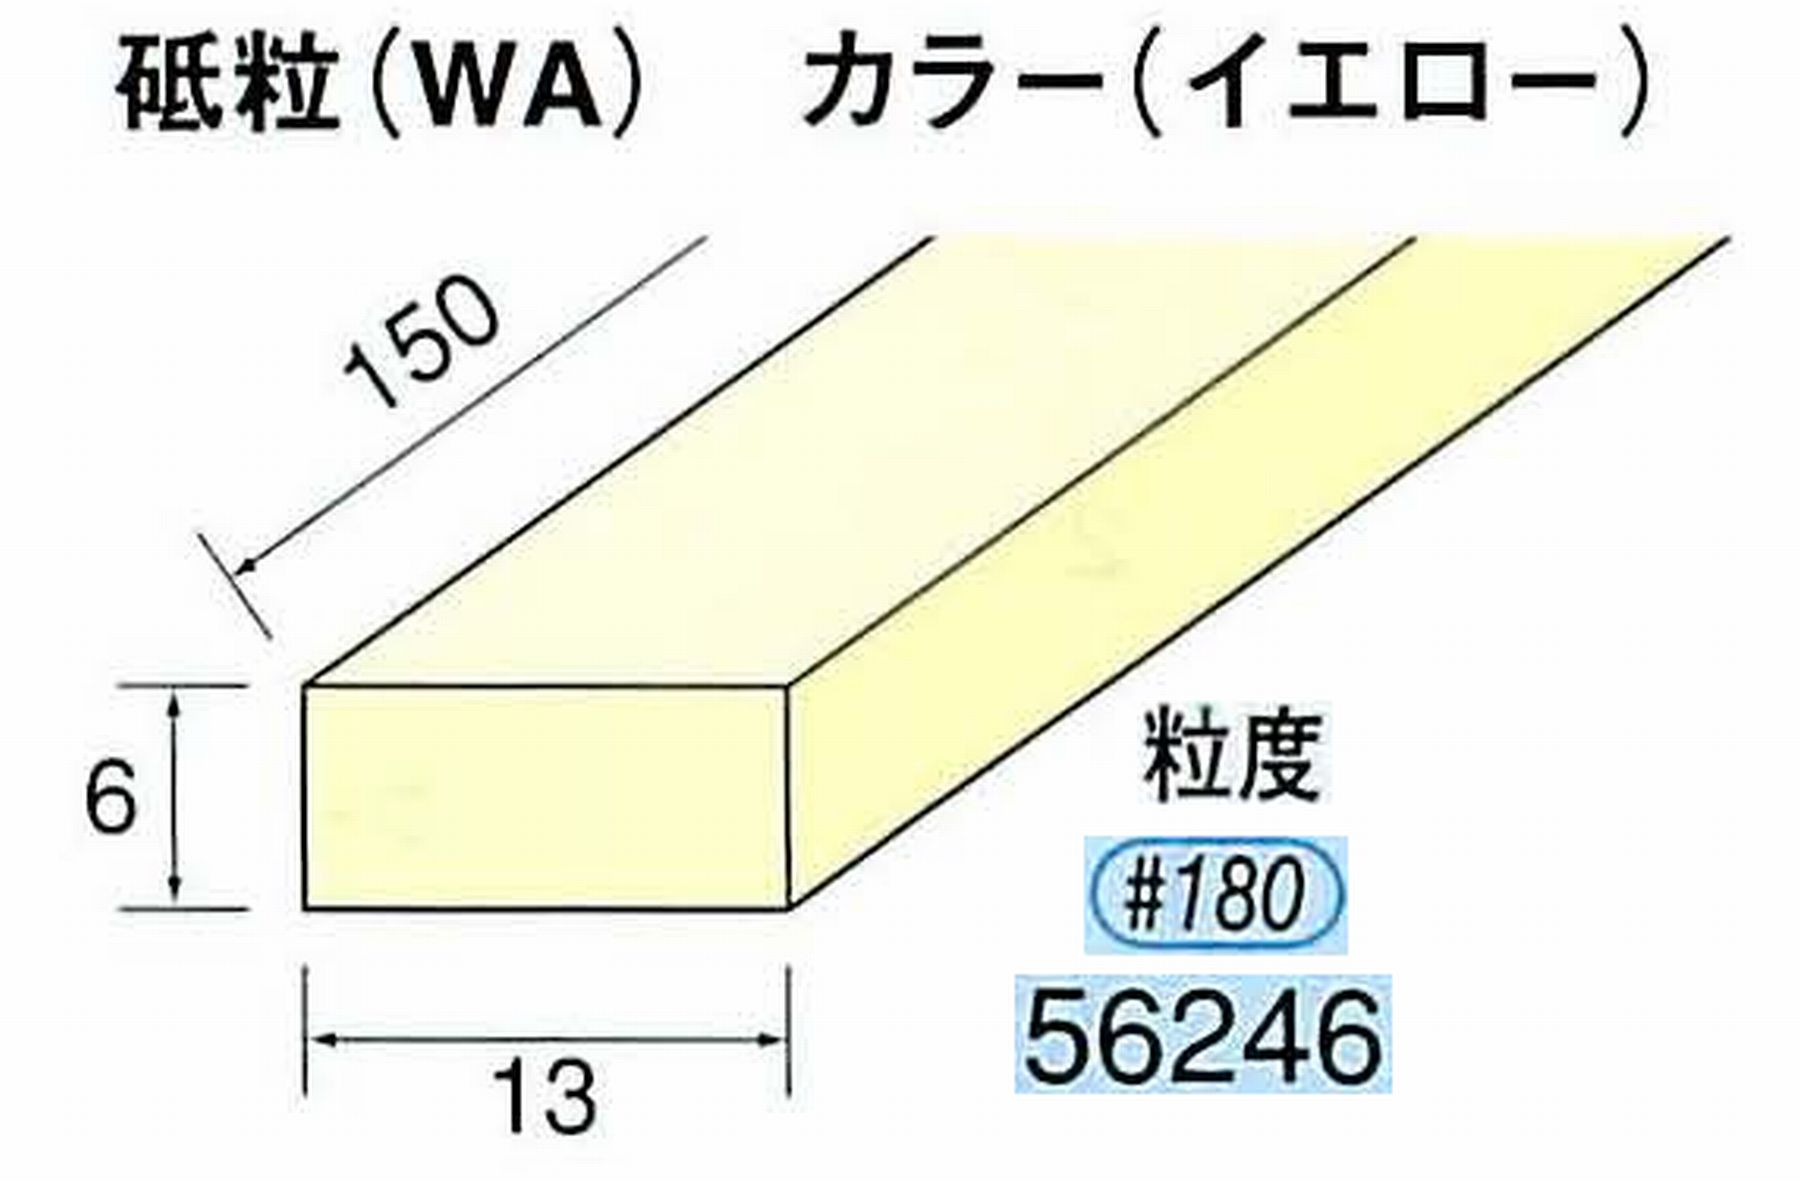 ナカニシ/NAKANISHI スティック砥石 イエロー・フィニッシュシリーズ 砥粒(WA) 56246